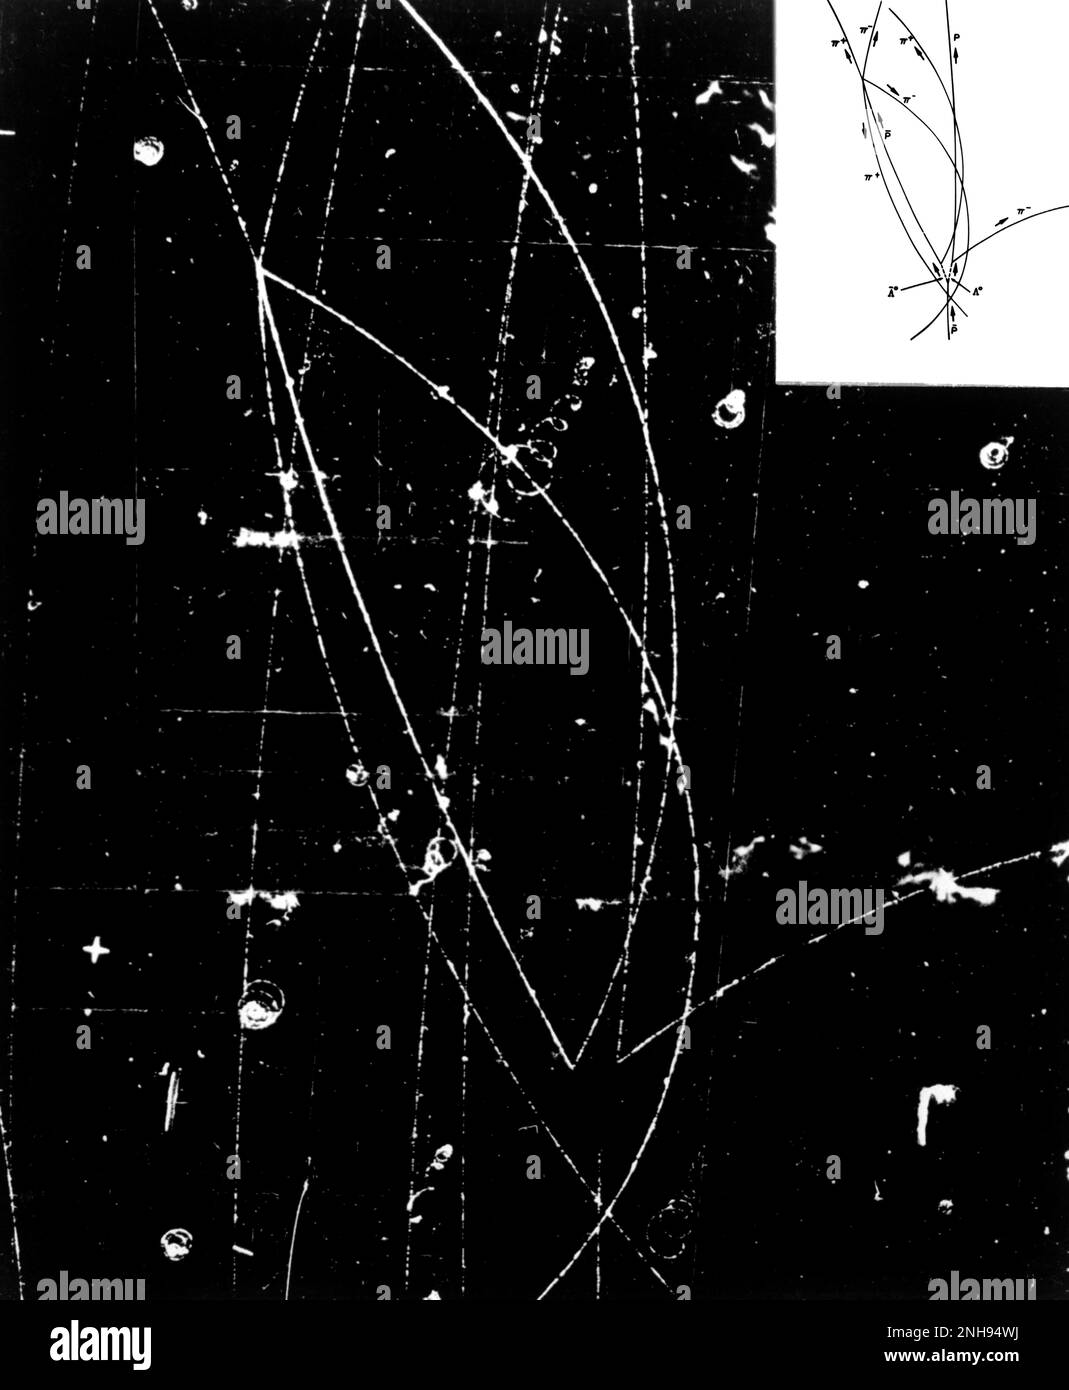 Production d'événements dans la chambre à bulles, décomposition du lambda neutre, hyperons anti-lambda. Chambre à bulles-772A. Ministère de l'énergie, Lawrence Berkeley National Laboratory, juillet 1959. Banque D'Images